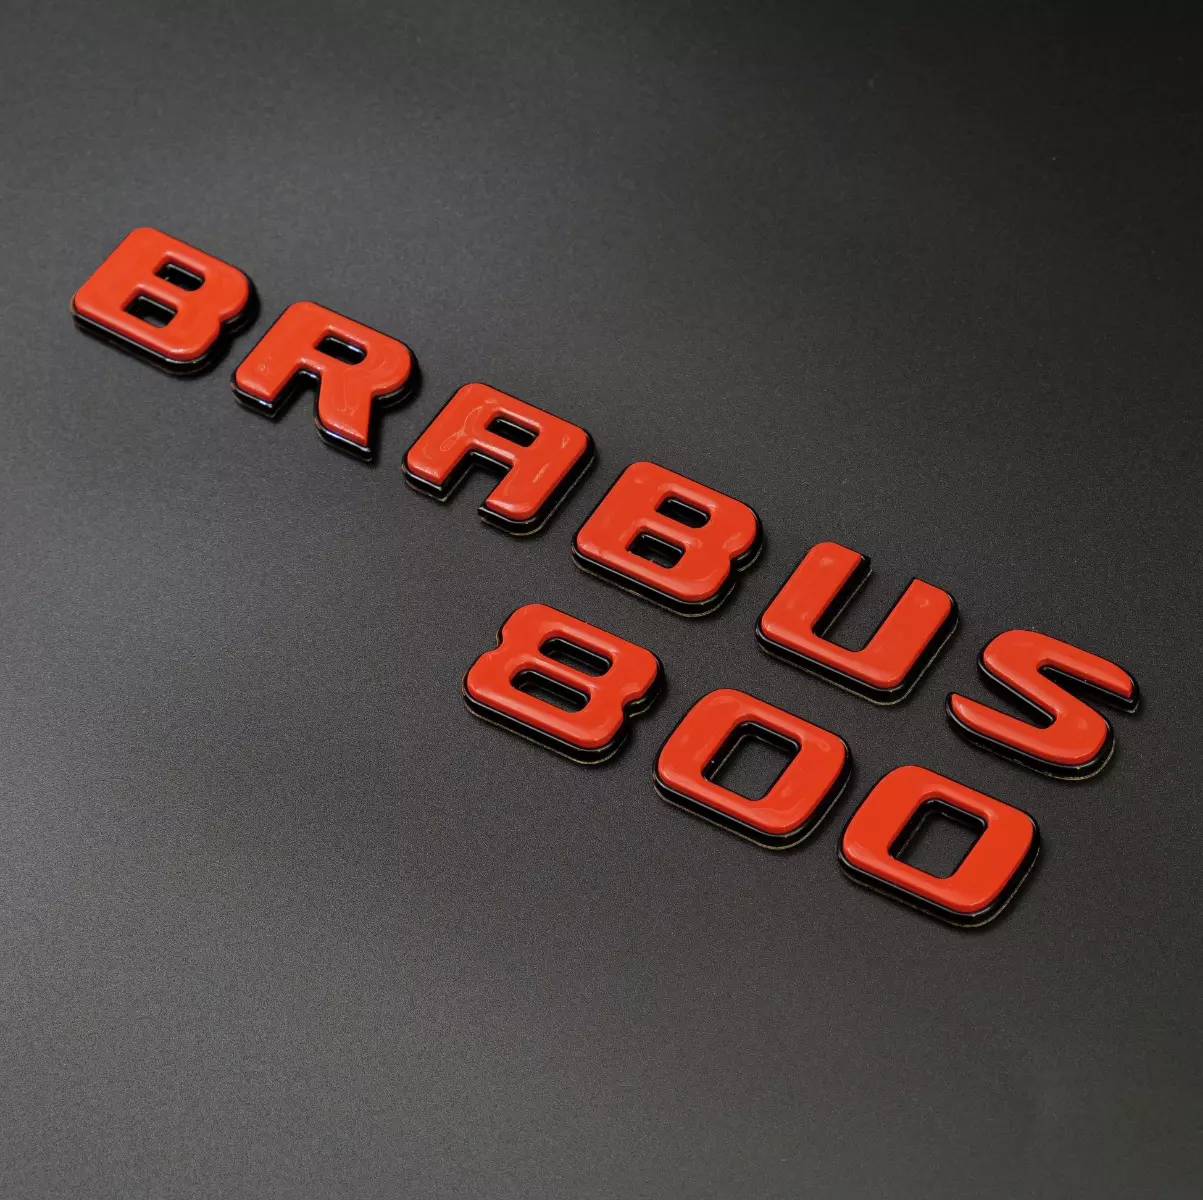 Orange with Black Brabus 800 Badges Emblems Set for Mercedes-Benz Vehicles